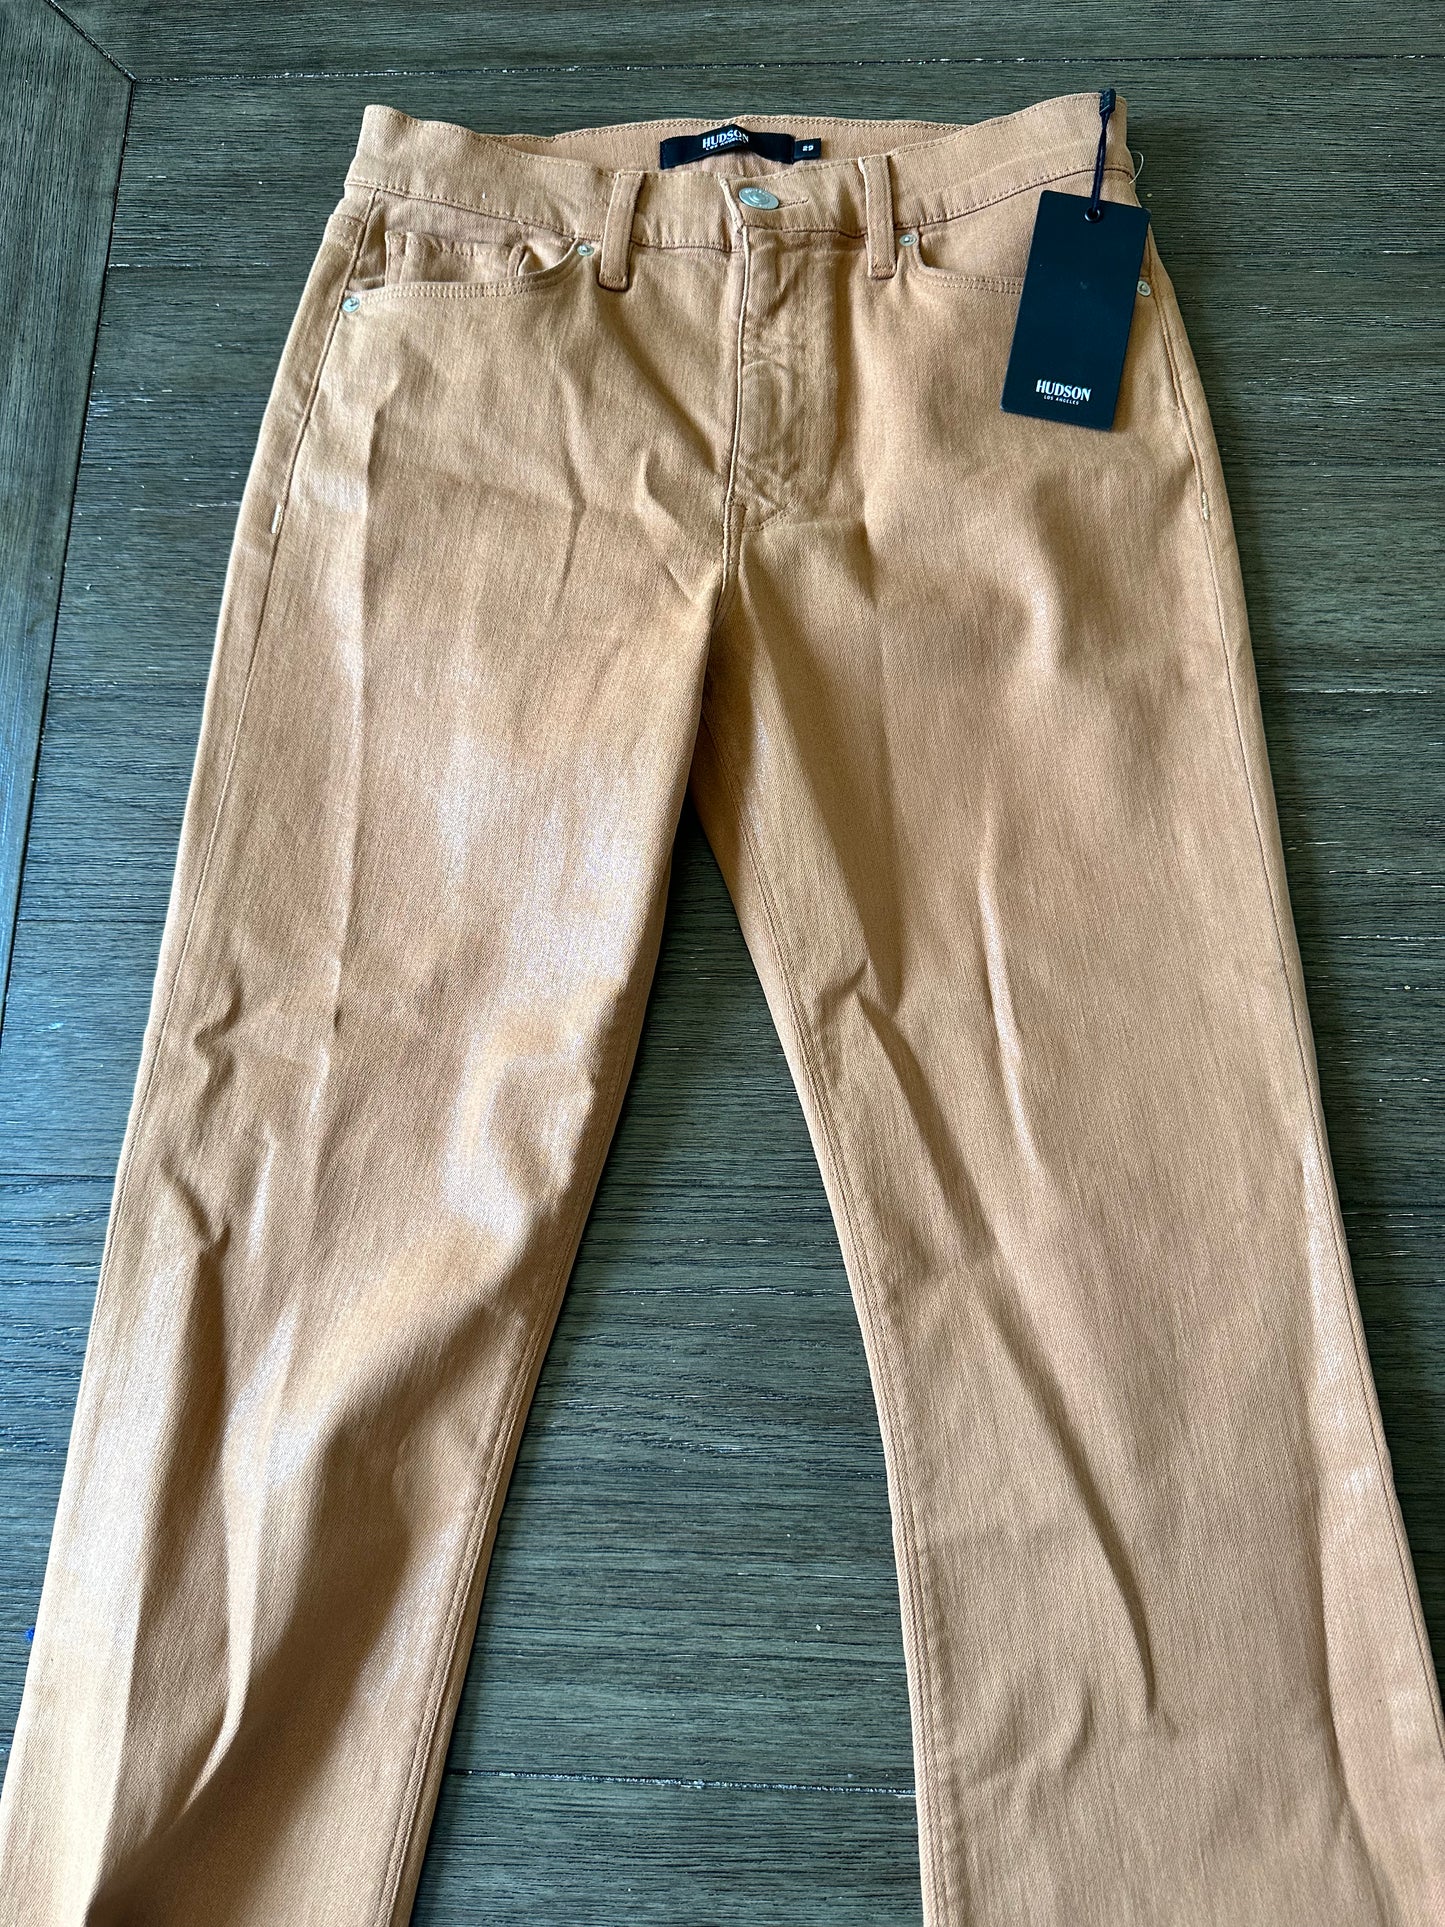 Nouveau- Pantalon Hudson Taille 29